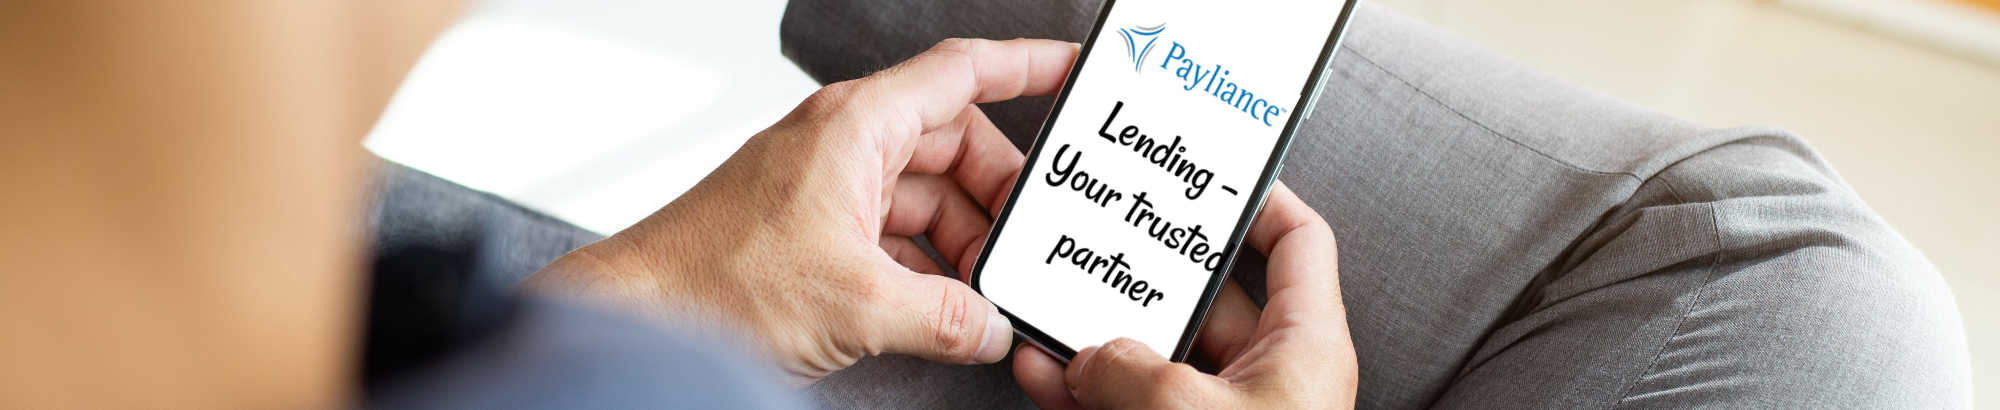 image of payliance lending